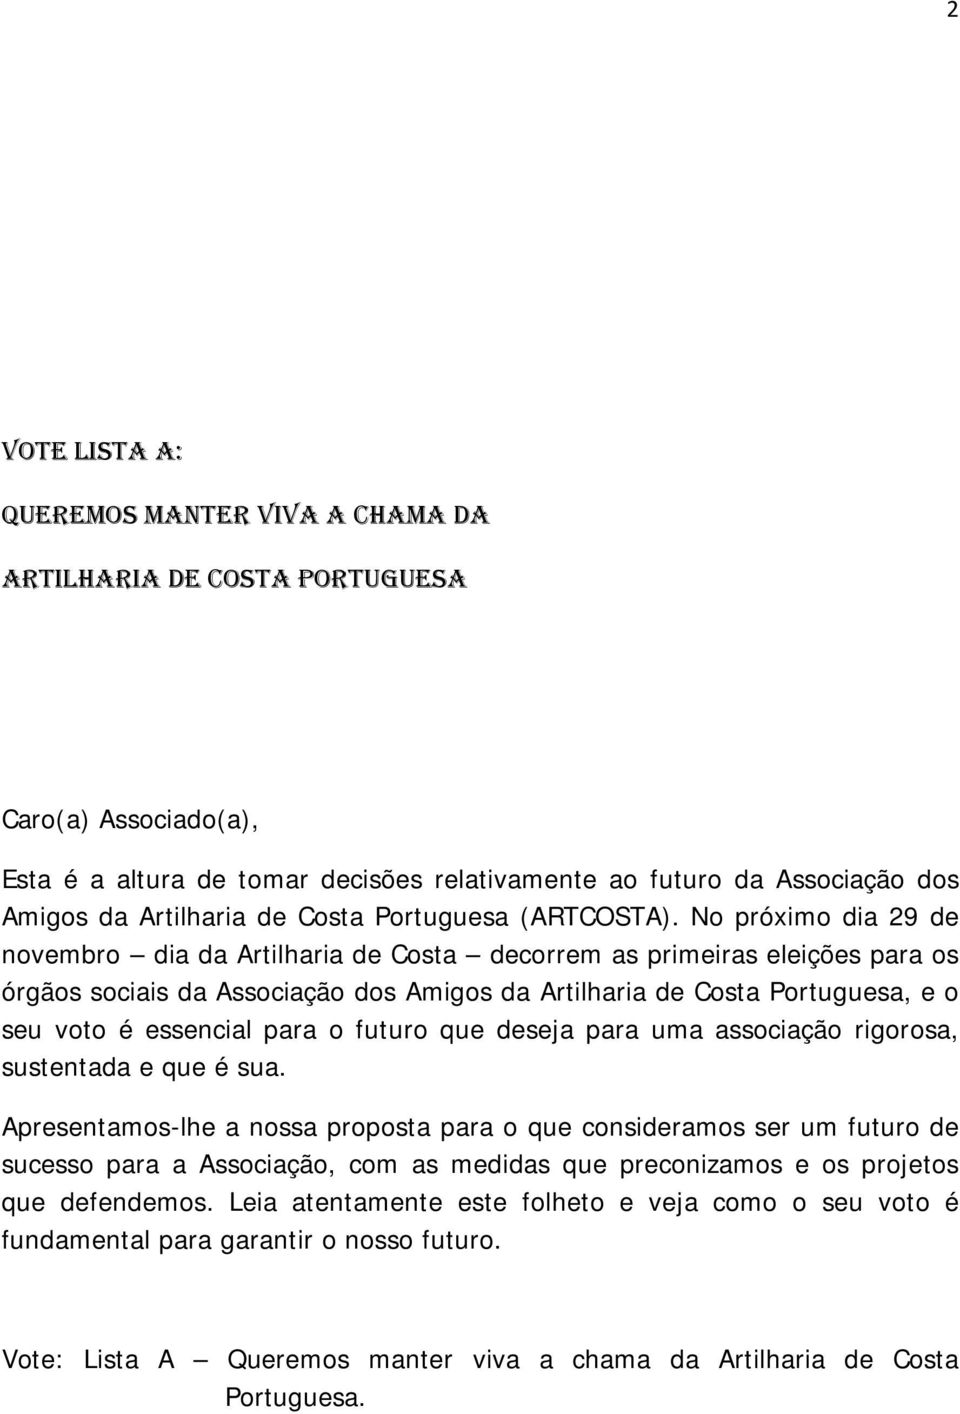 No próximo dia 29 de novembro dia da Artilharia de Costa decorrem as primeiras eleições para os órgãos sociais da Associação dos Amigos da Artilharia de Costa Portuguesa, e o seu voto é essencial